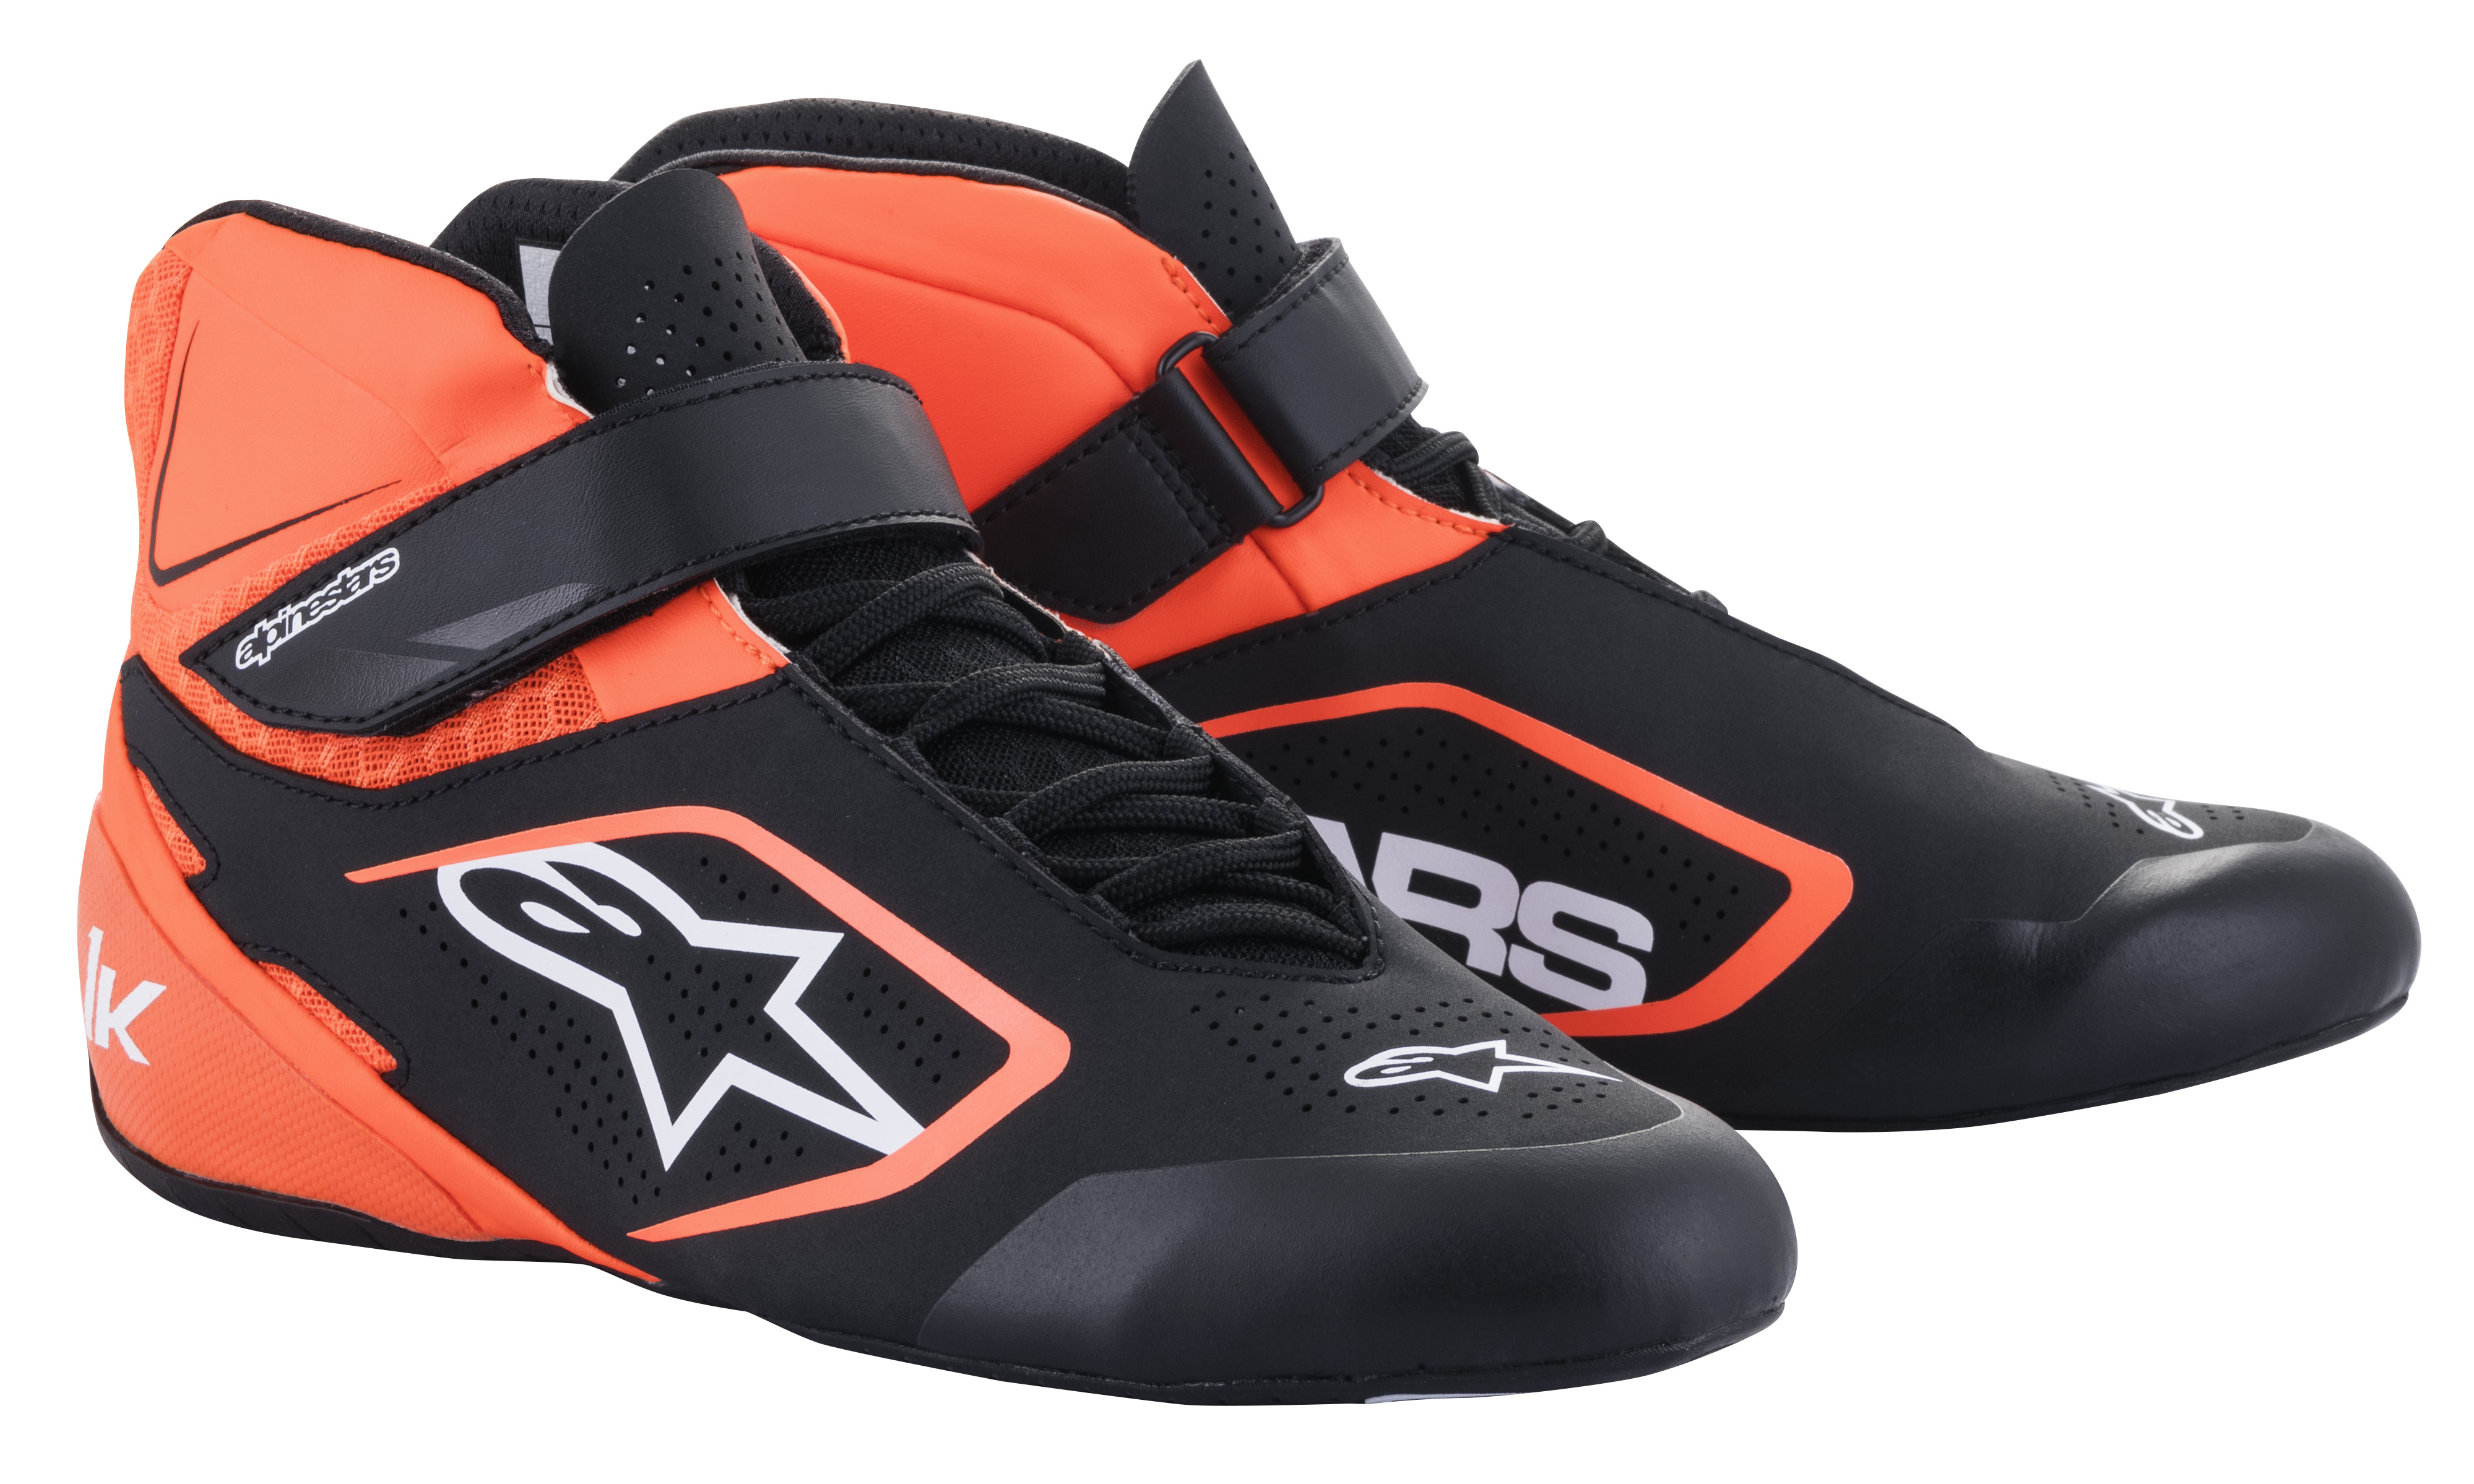 Picture of 2022 Tech-1 K V2 shoes black/orange fl.